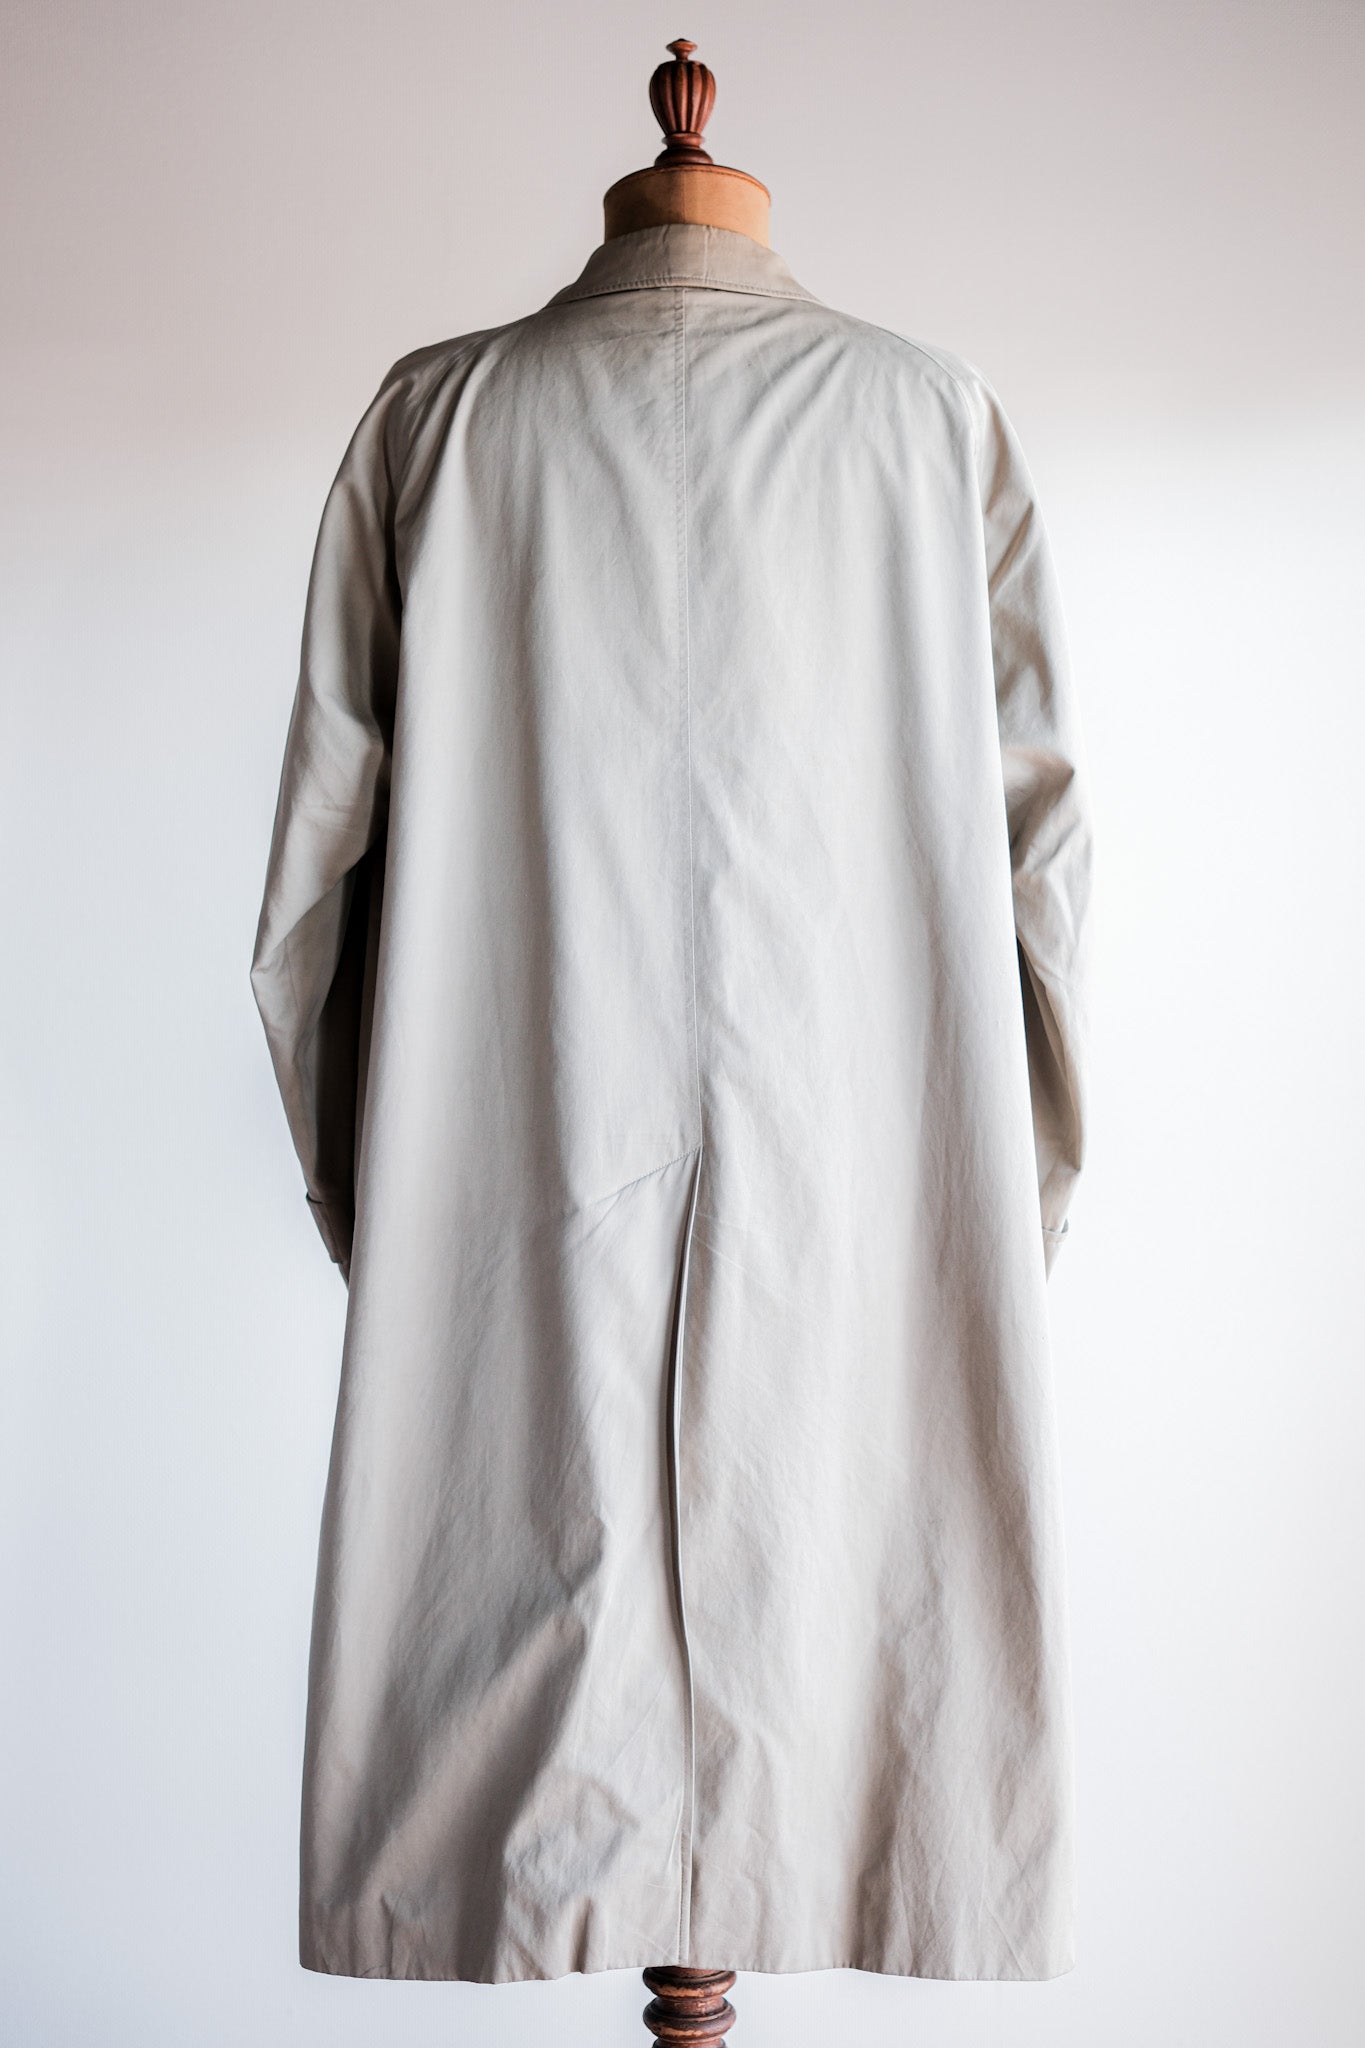 [〜80年代]復古burberrys單raglan balmacaan外套c100尺寸。48reg“ Al Duca d'Aosta除了注意事項”